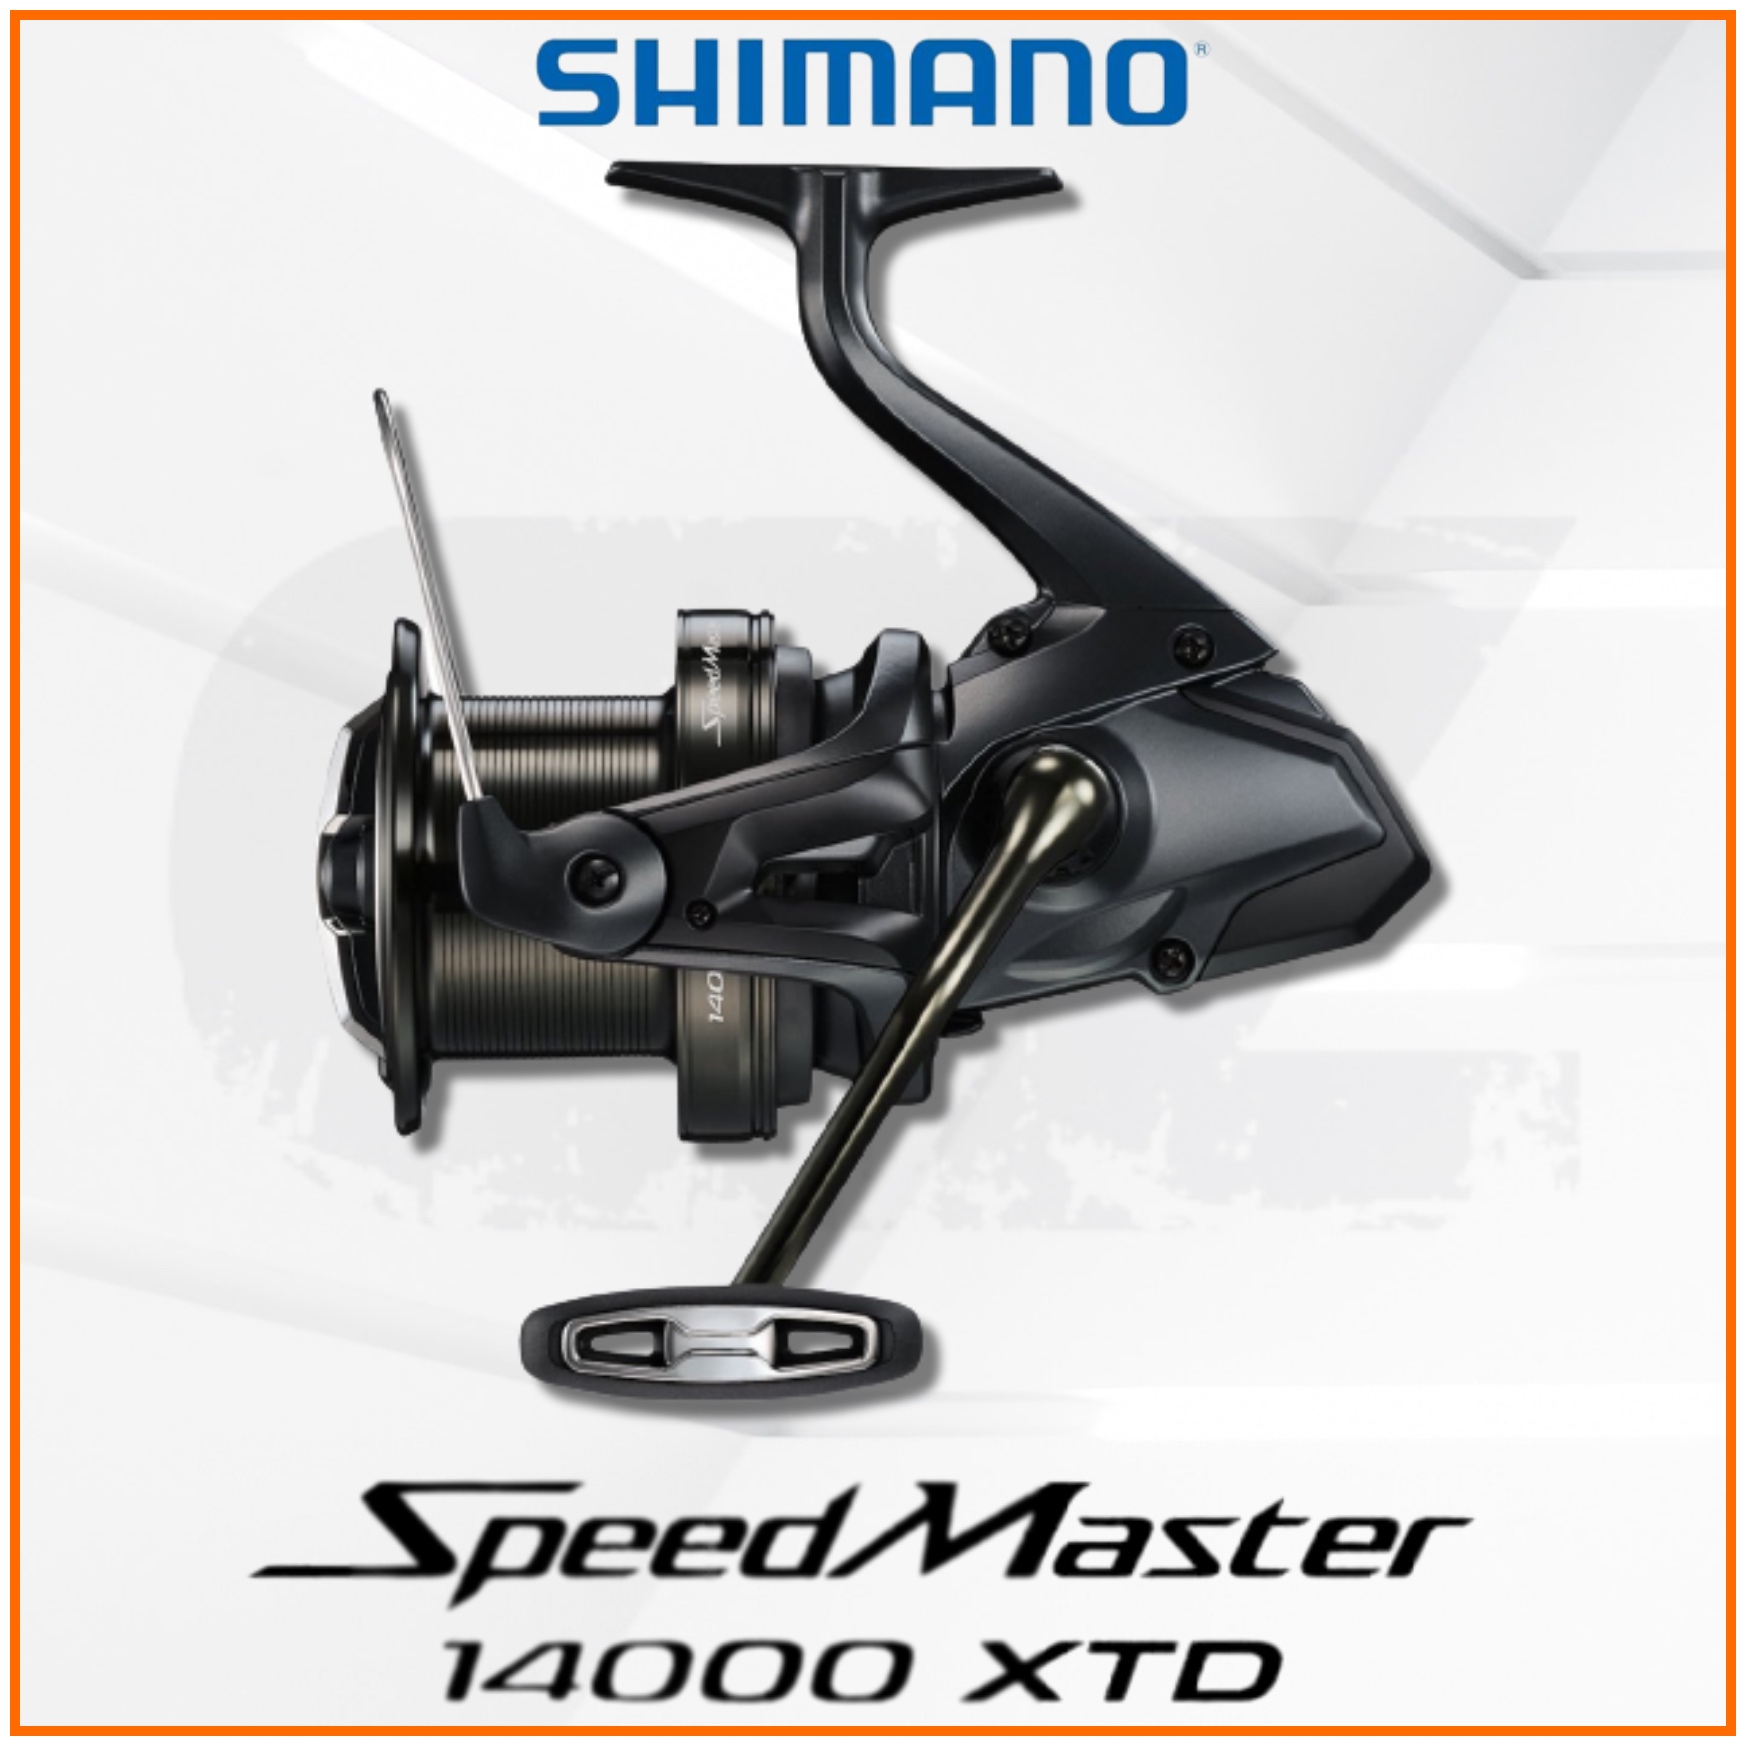 Shimano Speed Master 14000 XTD Surf Cast Spinning Fishing Reel